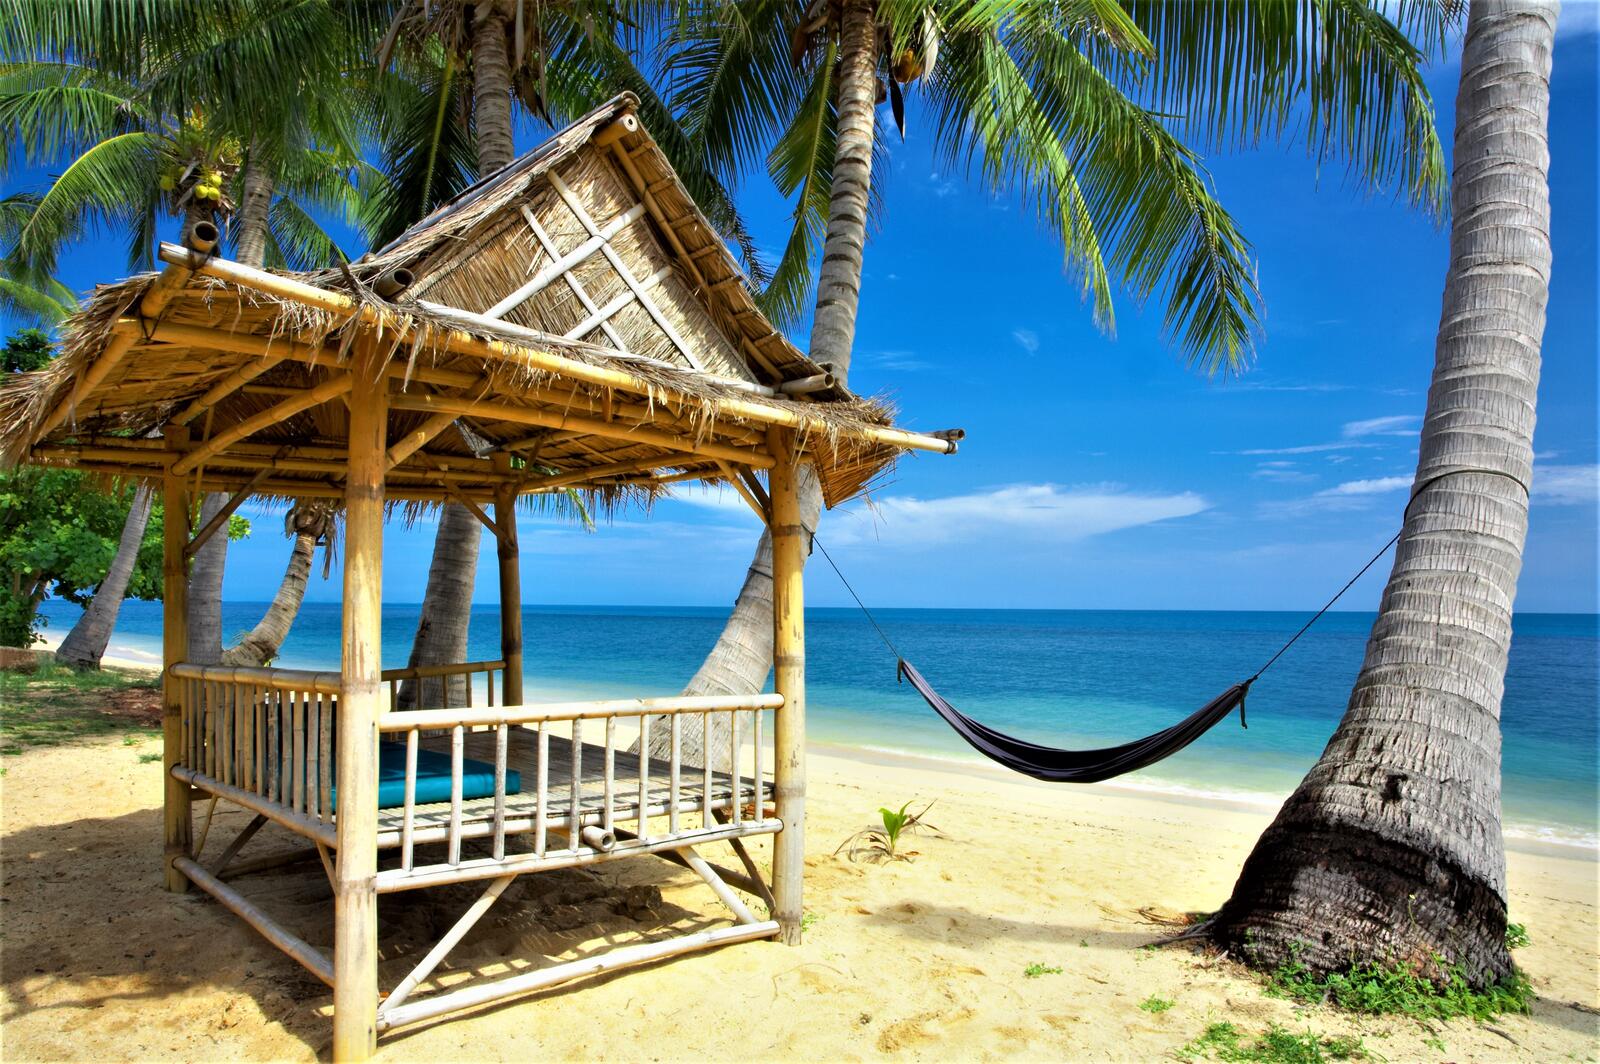 Обои Tropical paradise beach на рабочий стол